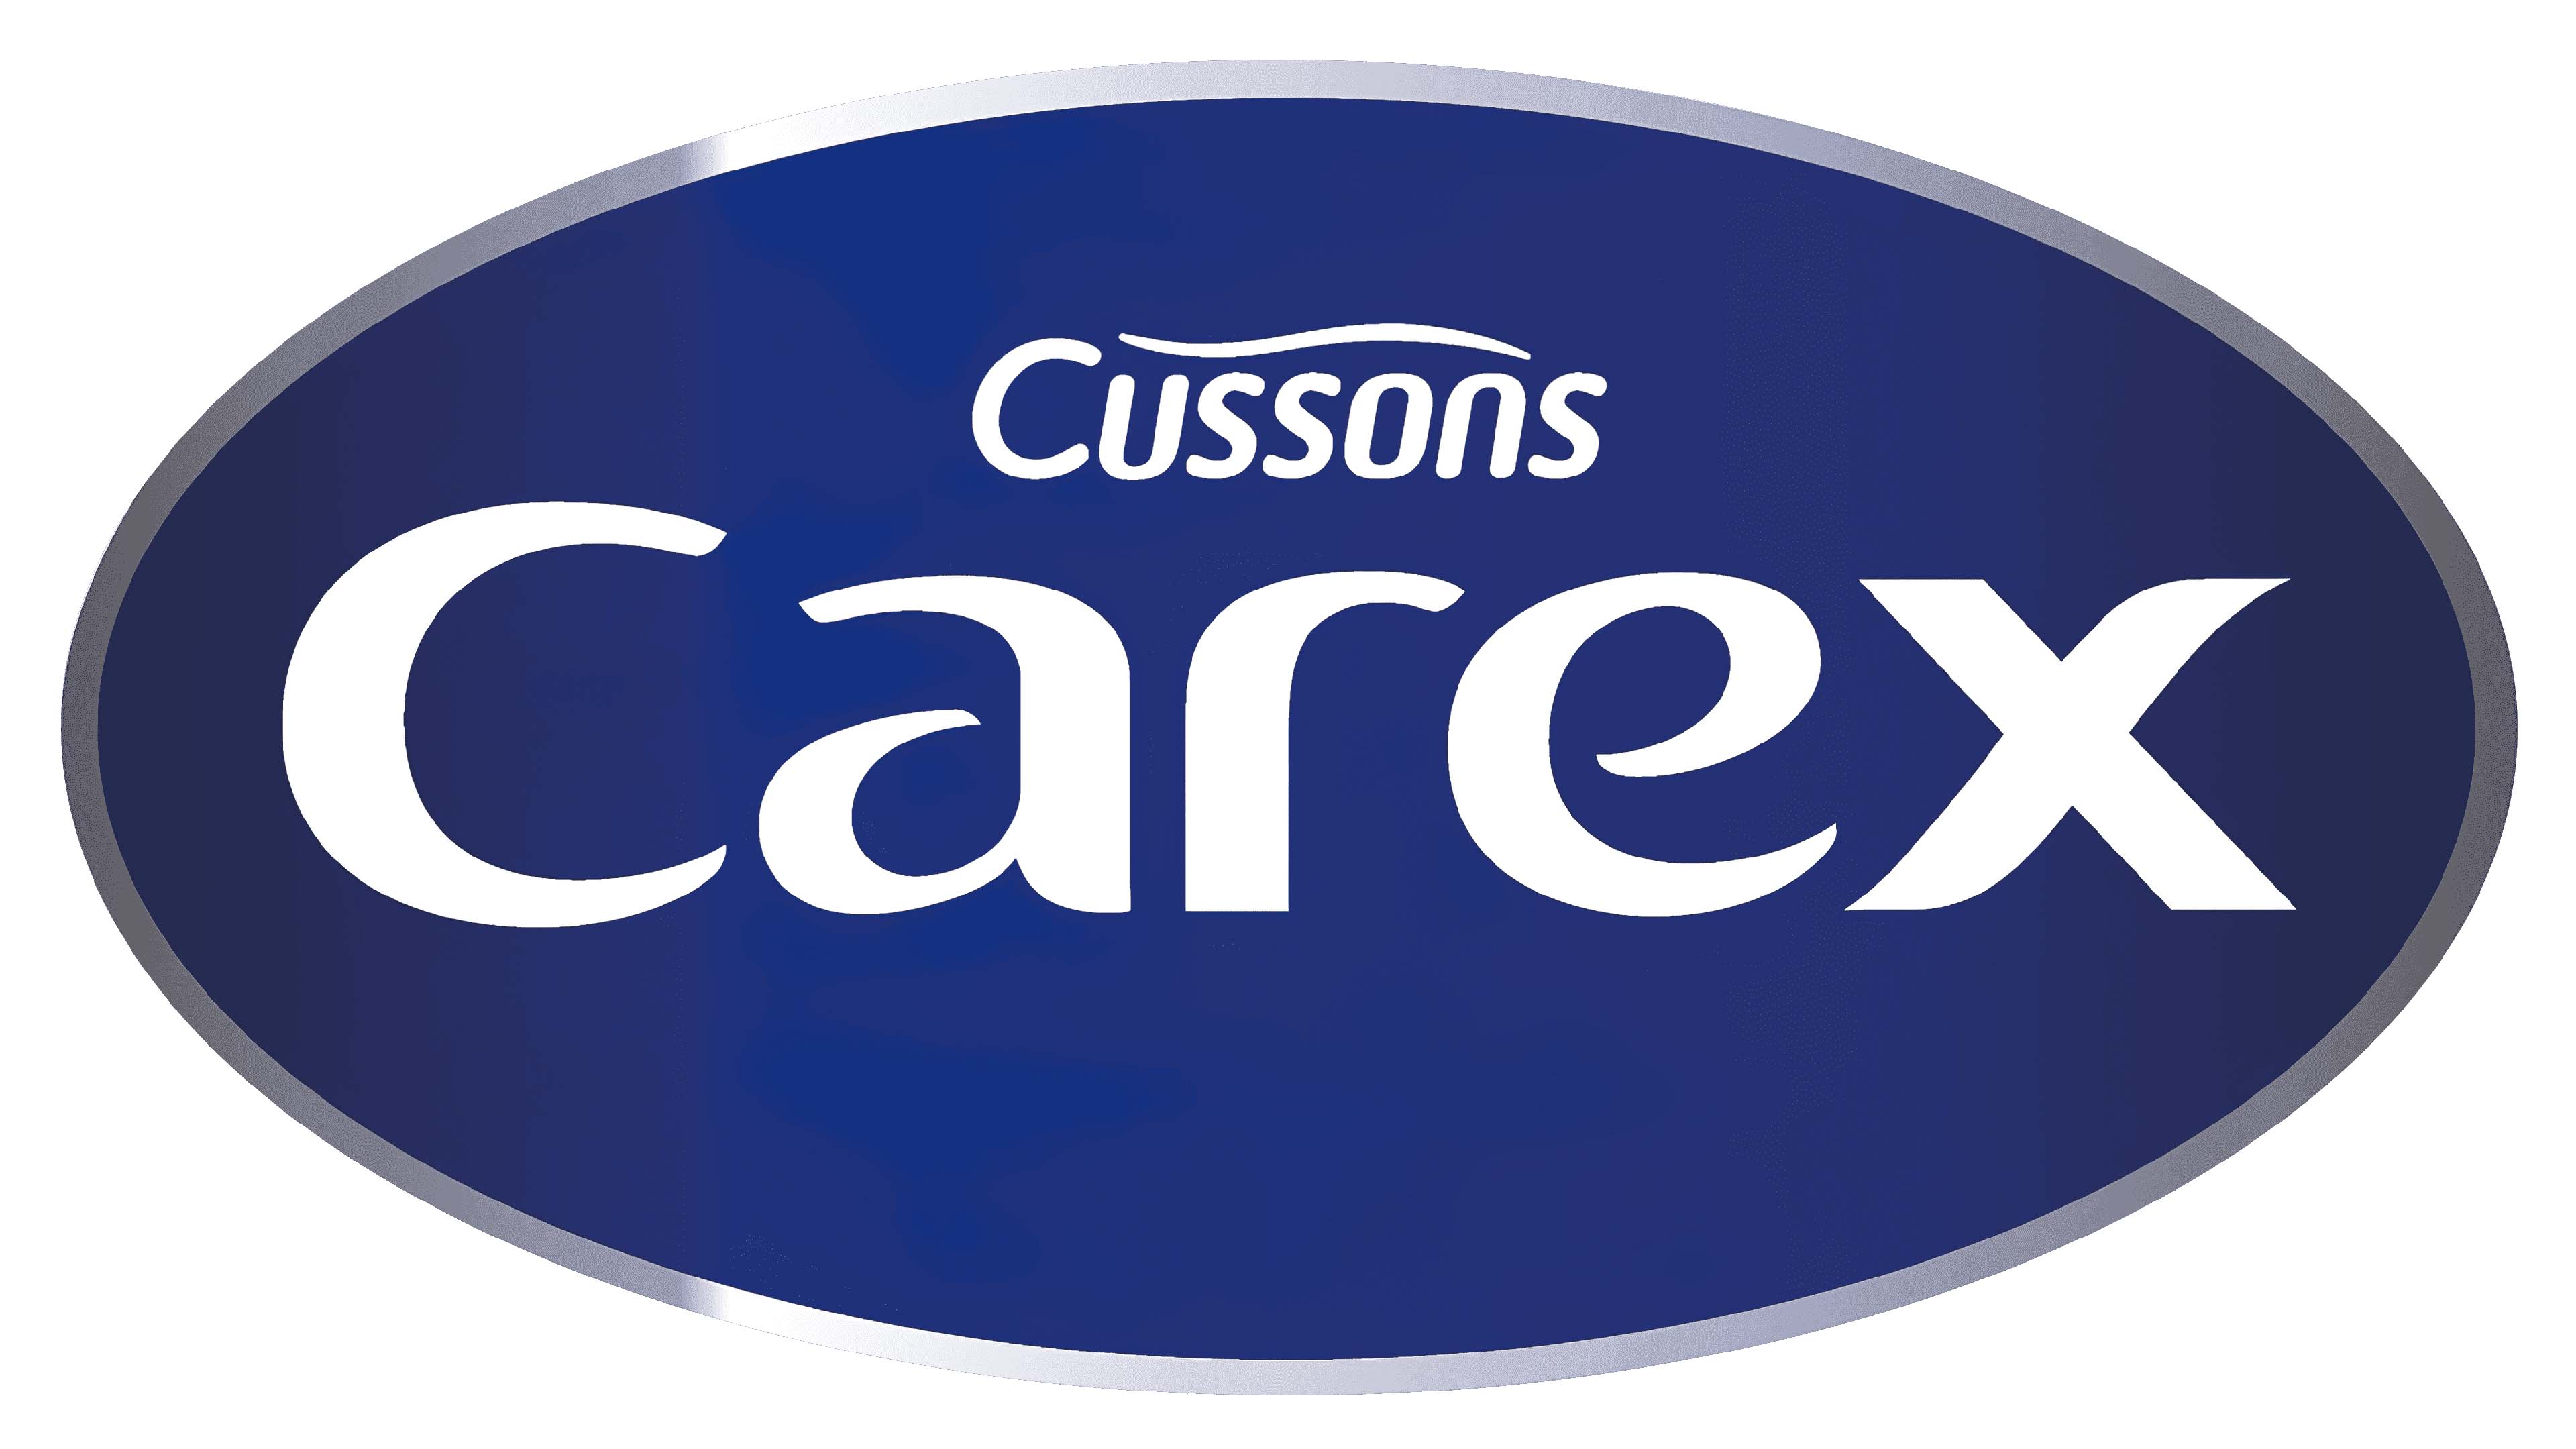 Mẫu thiết kế logo thương hiệu công ty CAREX